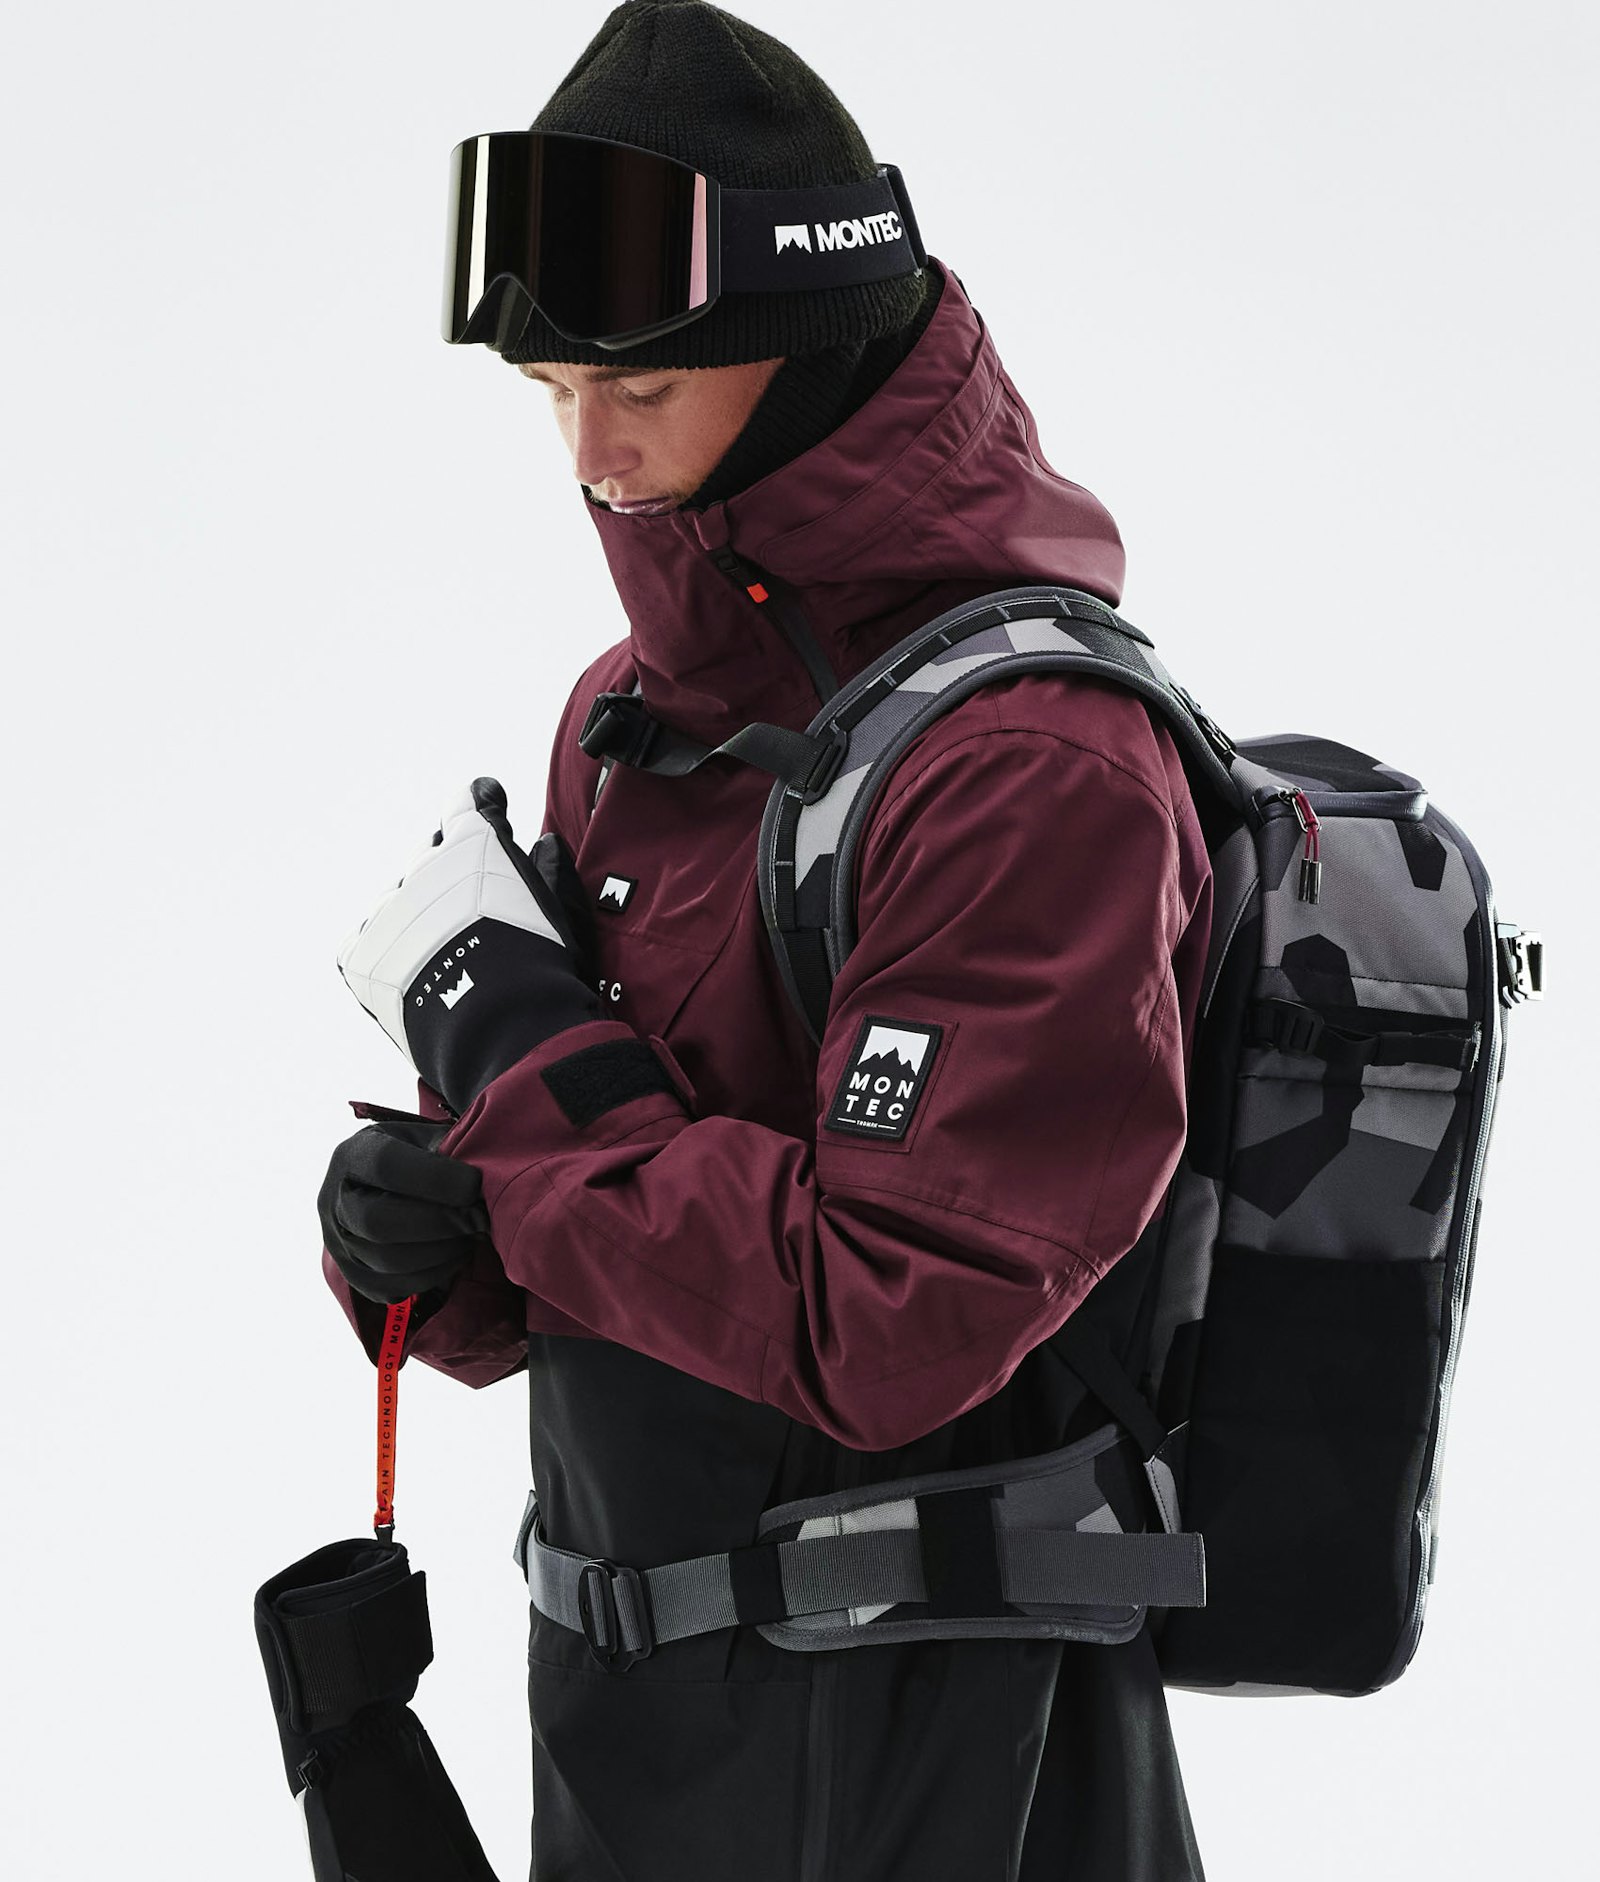 Doom 2021 Snowboard Jacket Men Burgundy/Black, Image 2 of 13